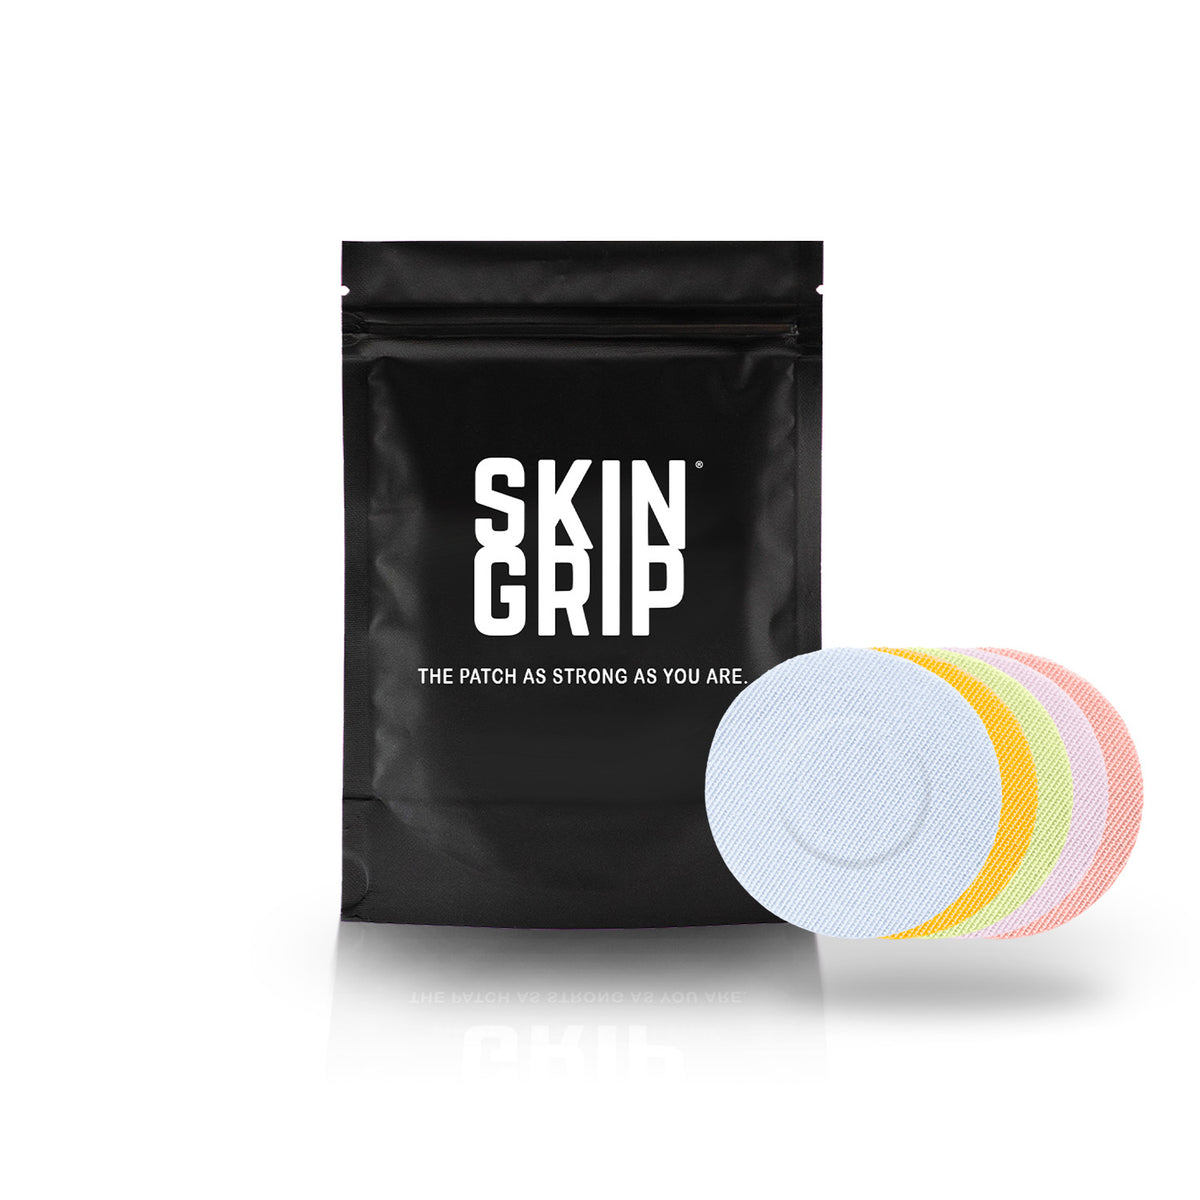 Skin Grip Original - Libre 3 Adhesive Patches - 20 Pack